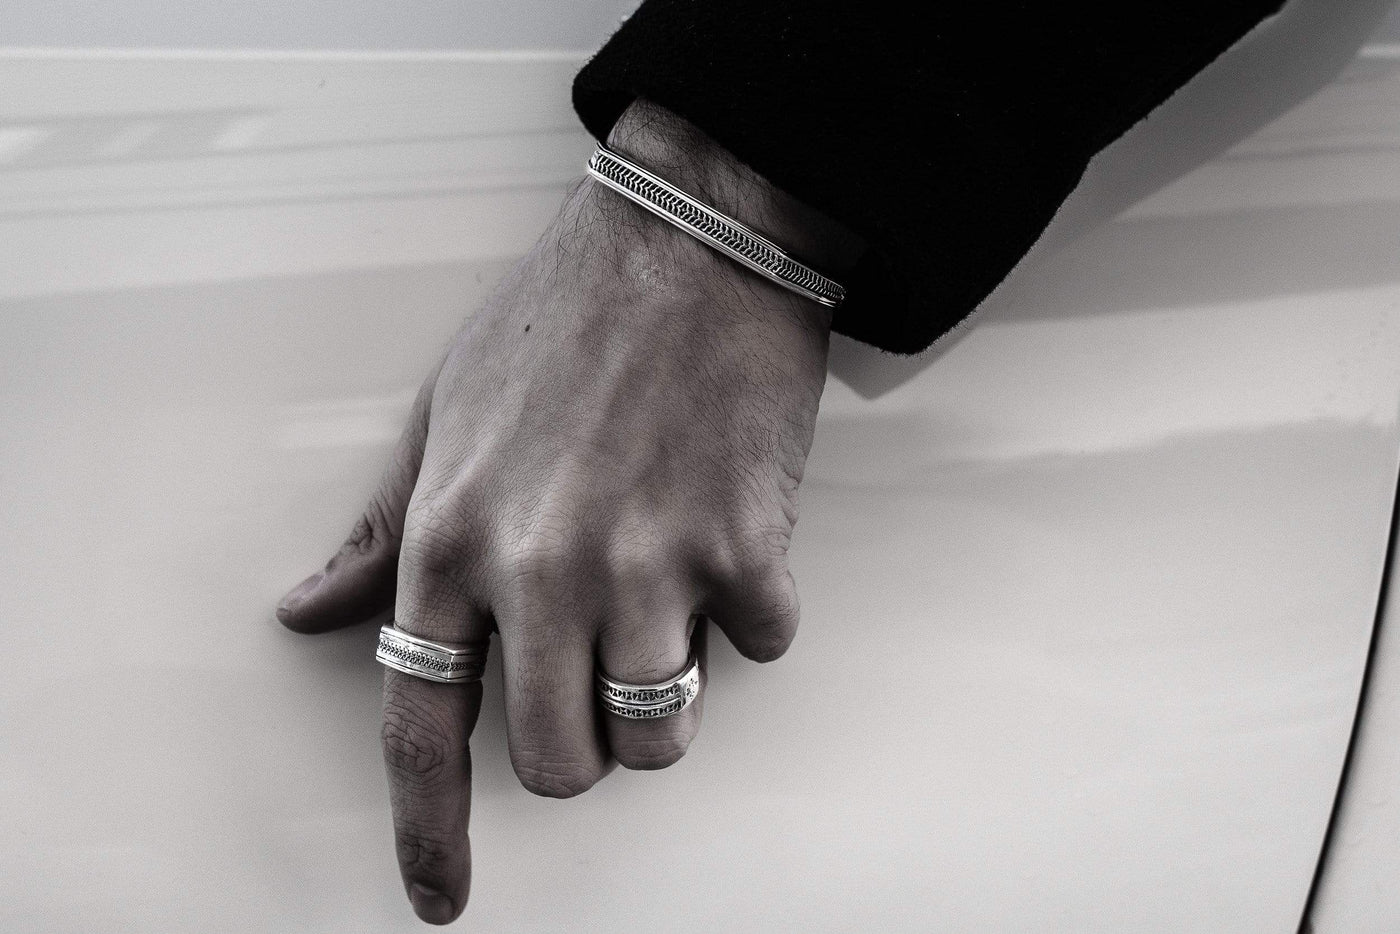 Cerniera - Girati Silver Rings for Men